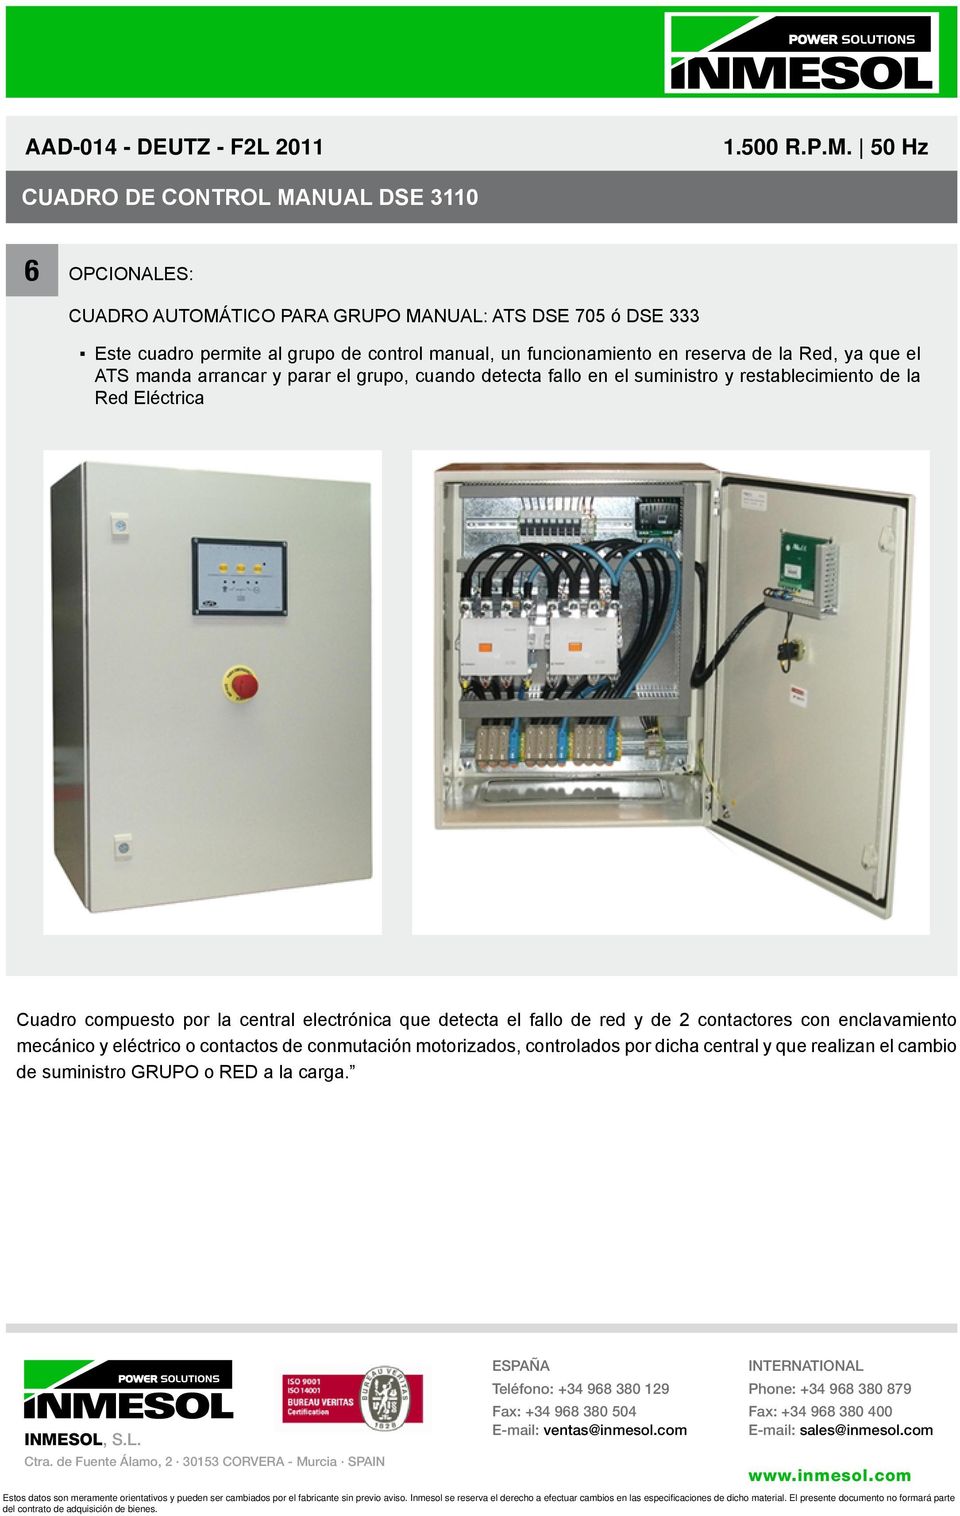 restablecimiento de la Red Eléctrica Cuadro compuesto por la central electrónica que detecta el fallo de red y de 2 contactores con